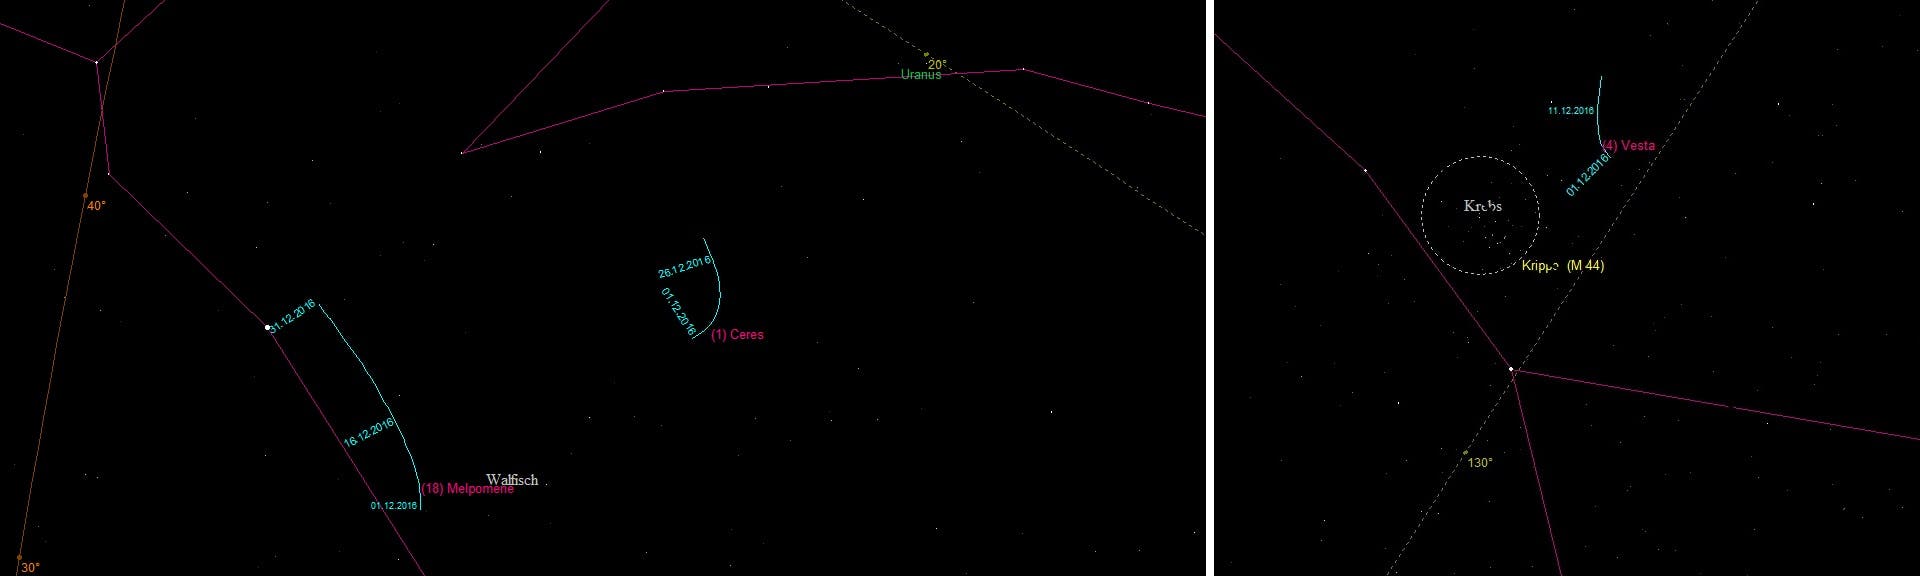 Aufsuchkarten für den Zwergplaneten (1) Ceres und die Asteroiden (4) Vesta und (18) Melpomene